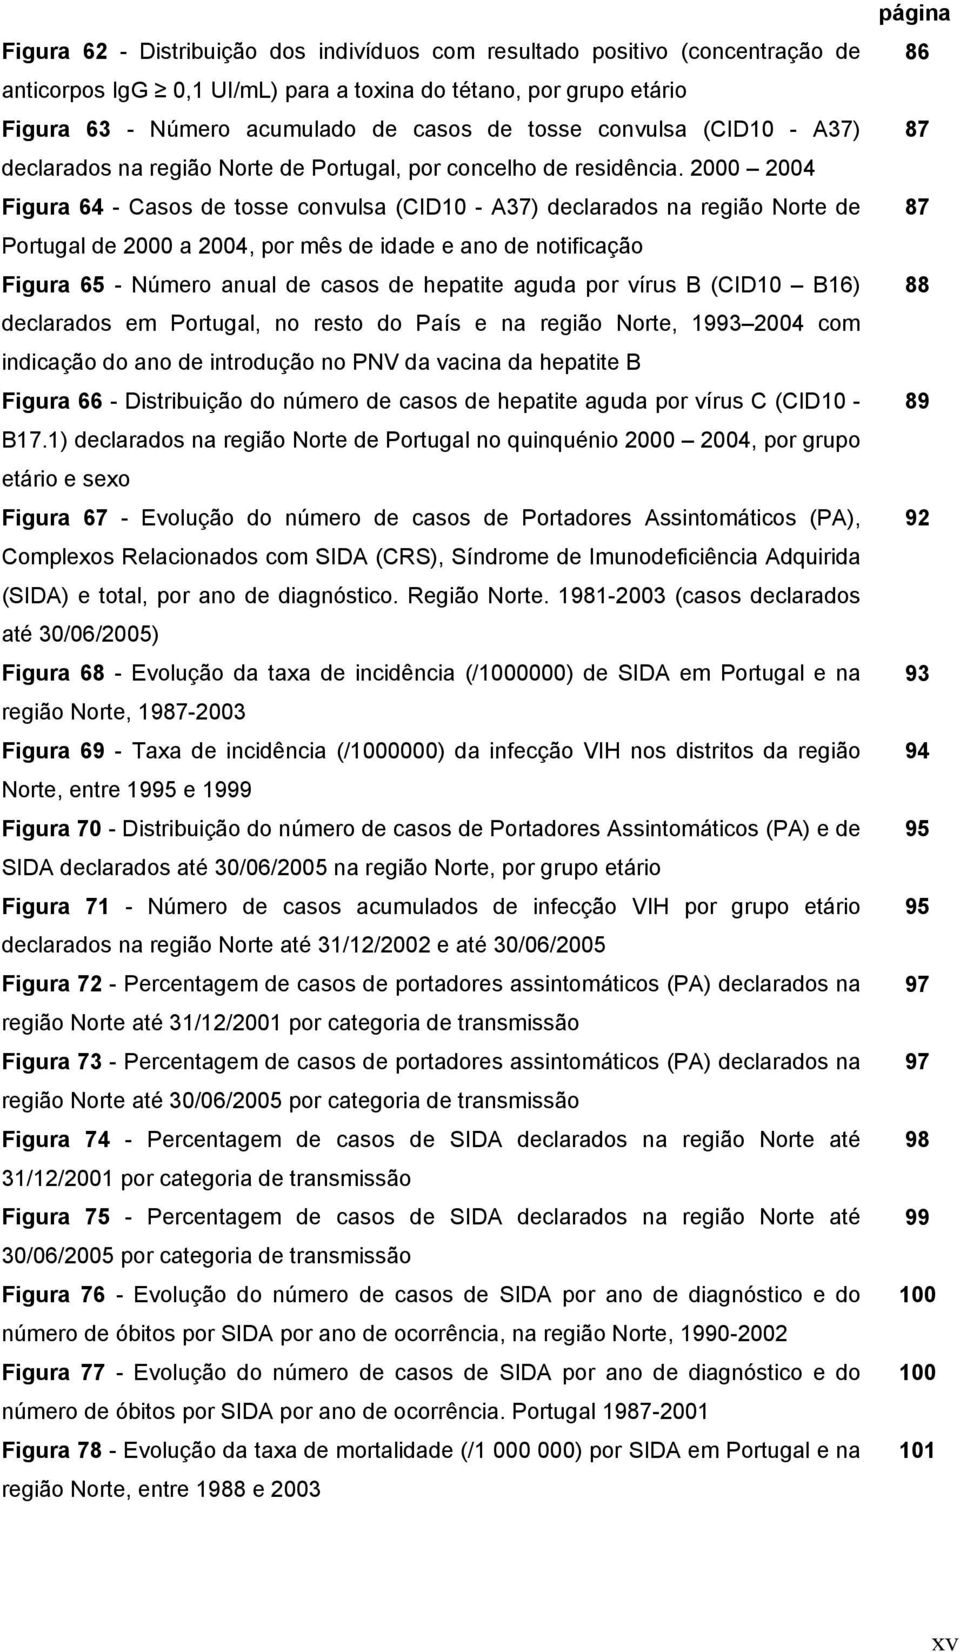 2000 2004 Figura 64 - Casos de tosse convulsa (CID10 - A37) declarados na região Norte de Portugal de 2000 a 2004, por mês de idade e ano de notificação Figura 65 - Número anual de casos de hepatite